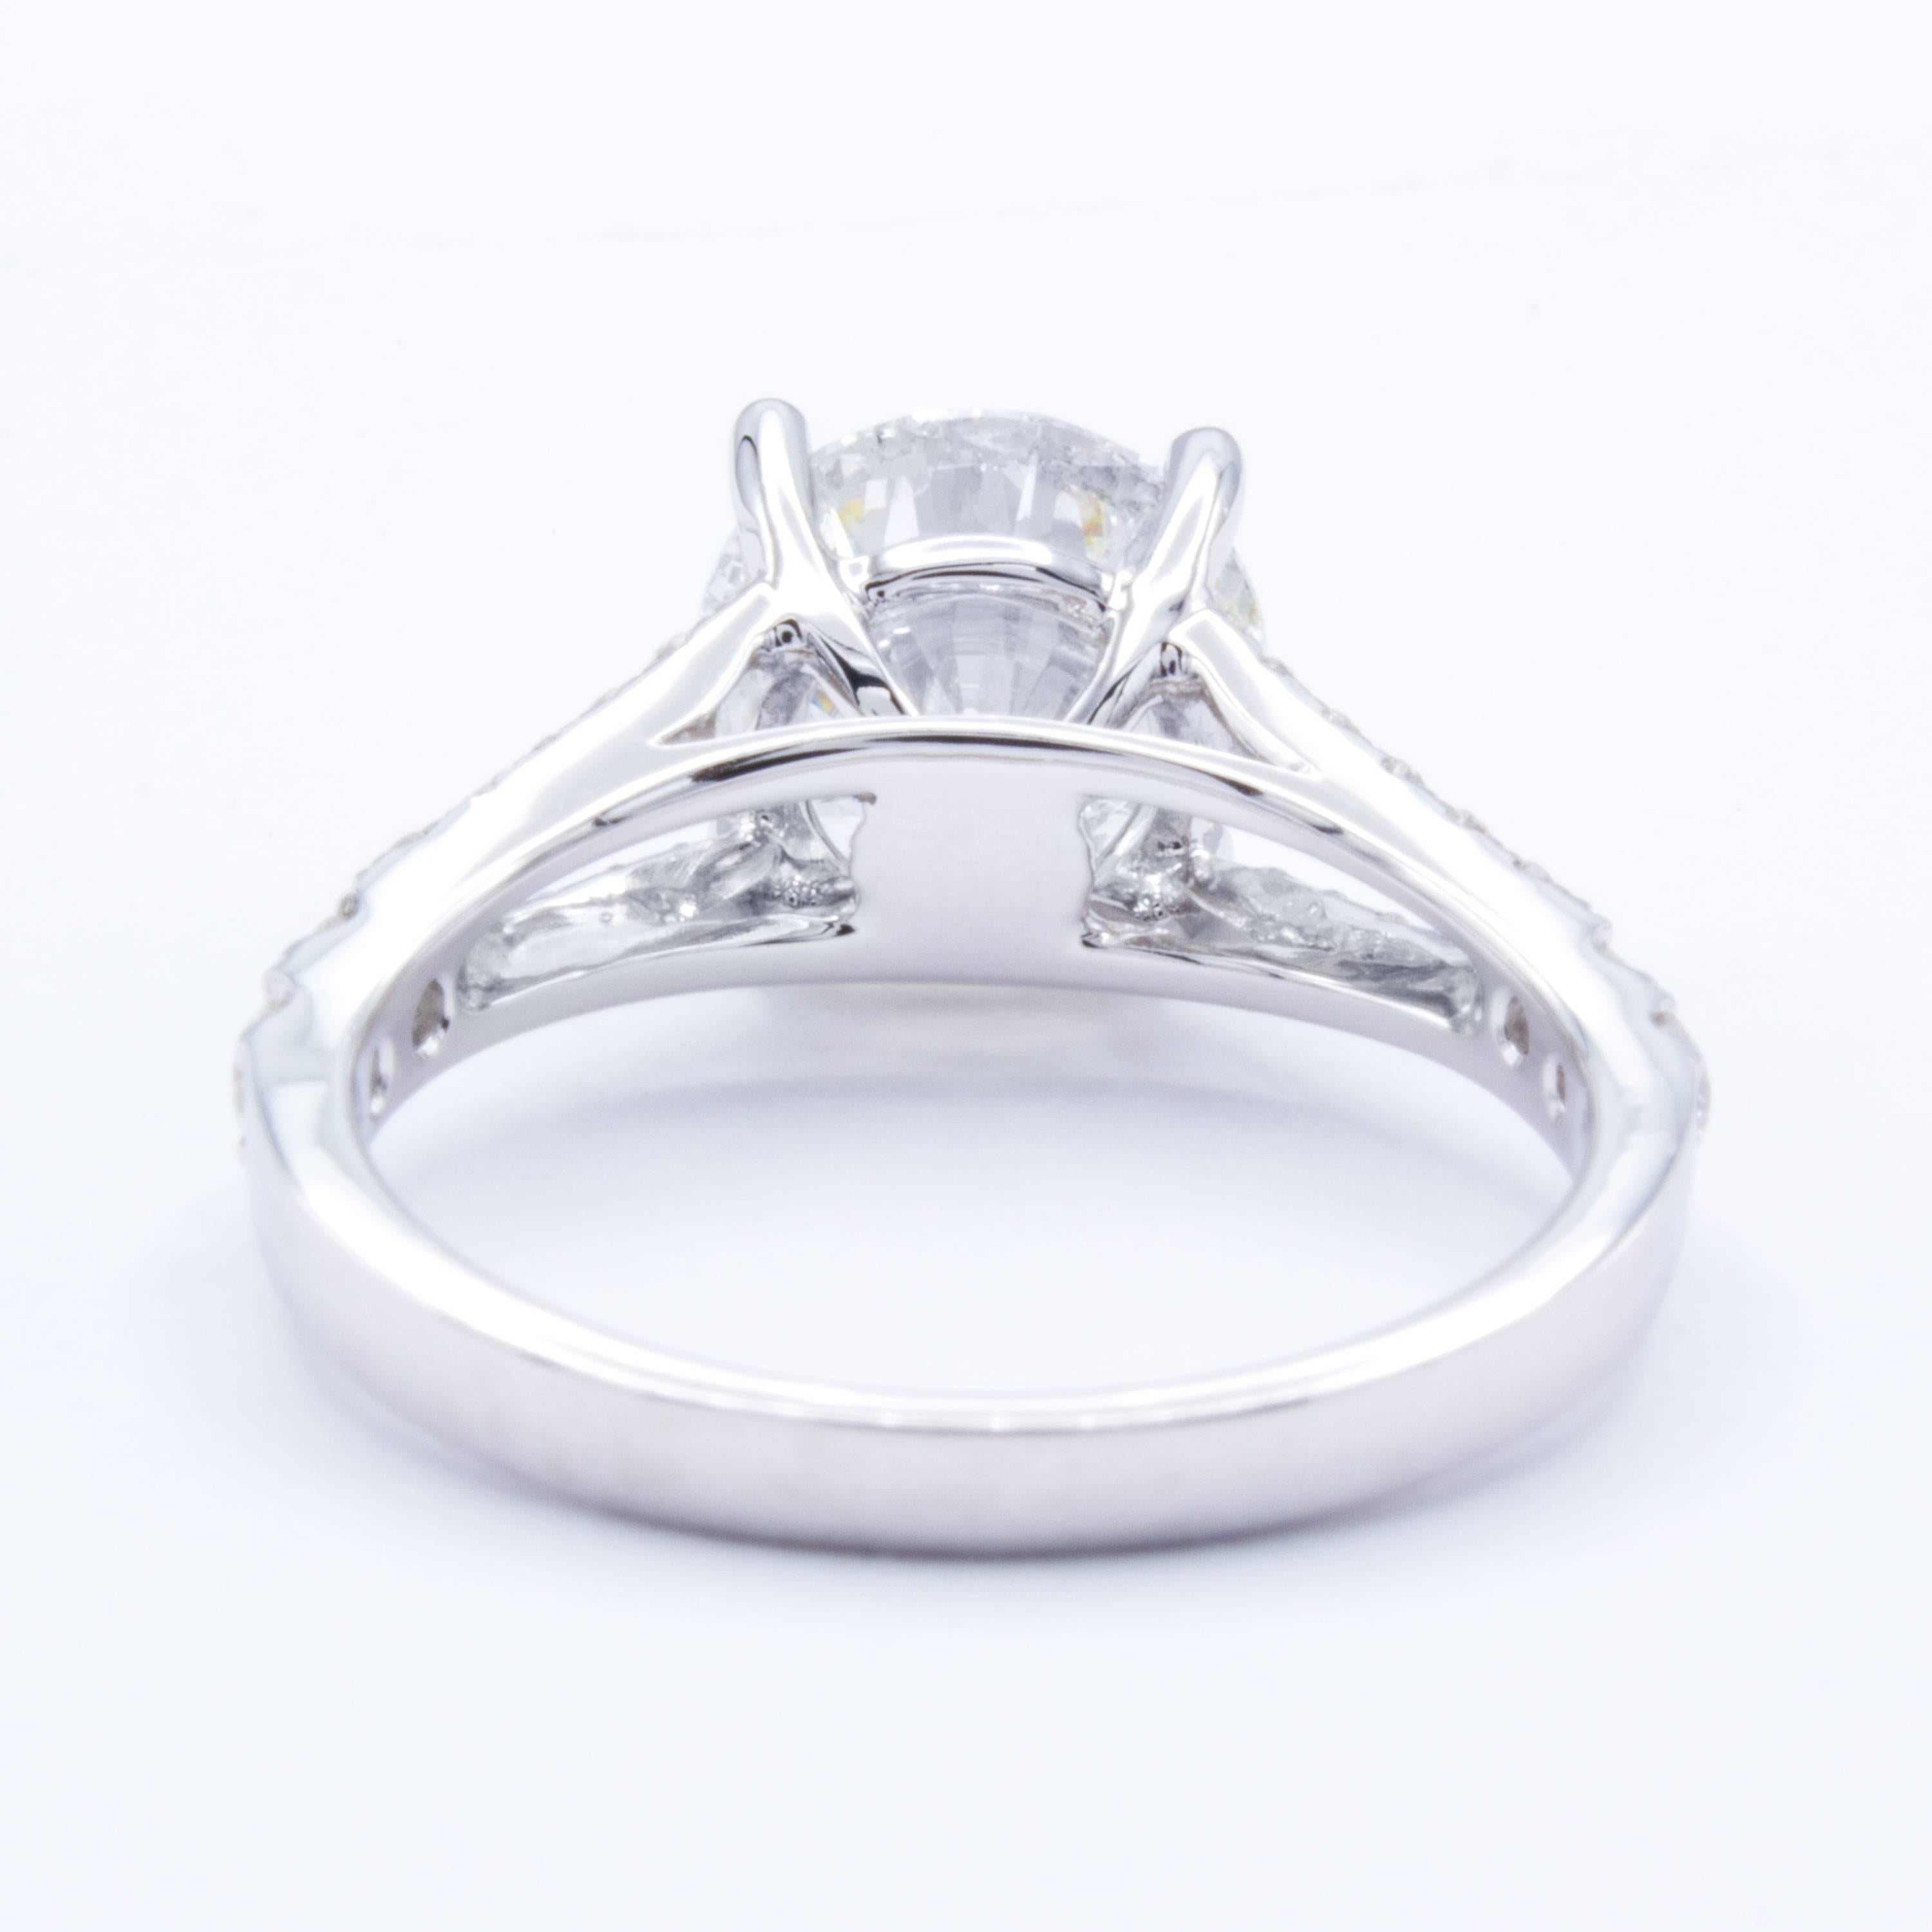 David Rosenberg 2.87 Carat Round Shape 18 Karat Gold Diamond Engagement Ring 2